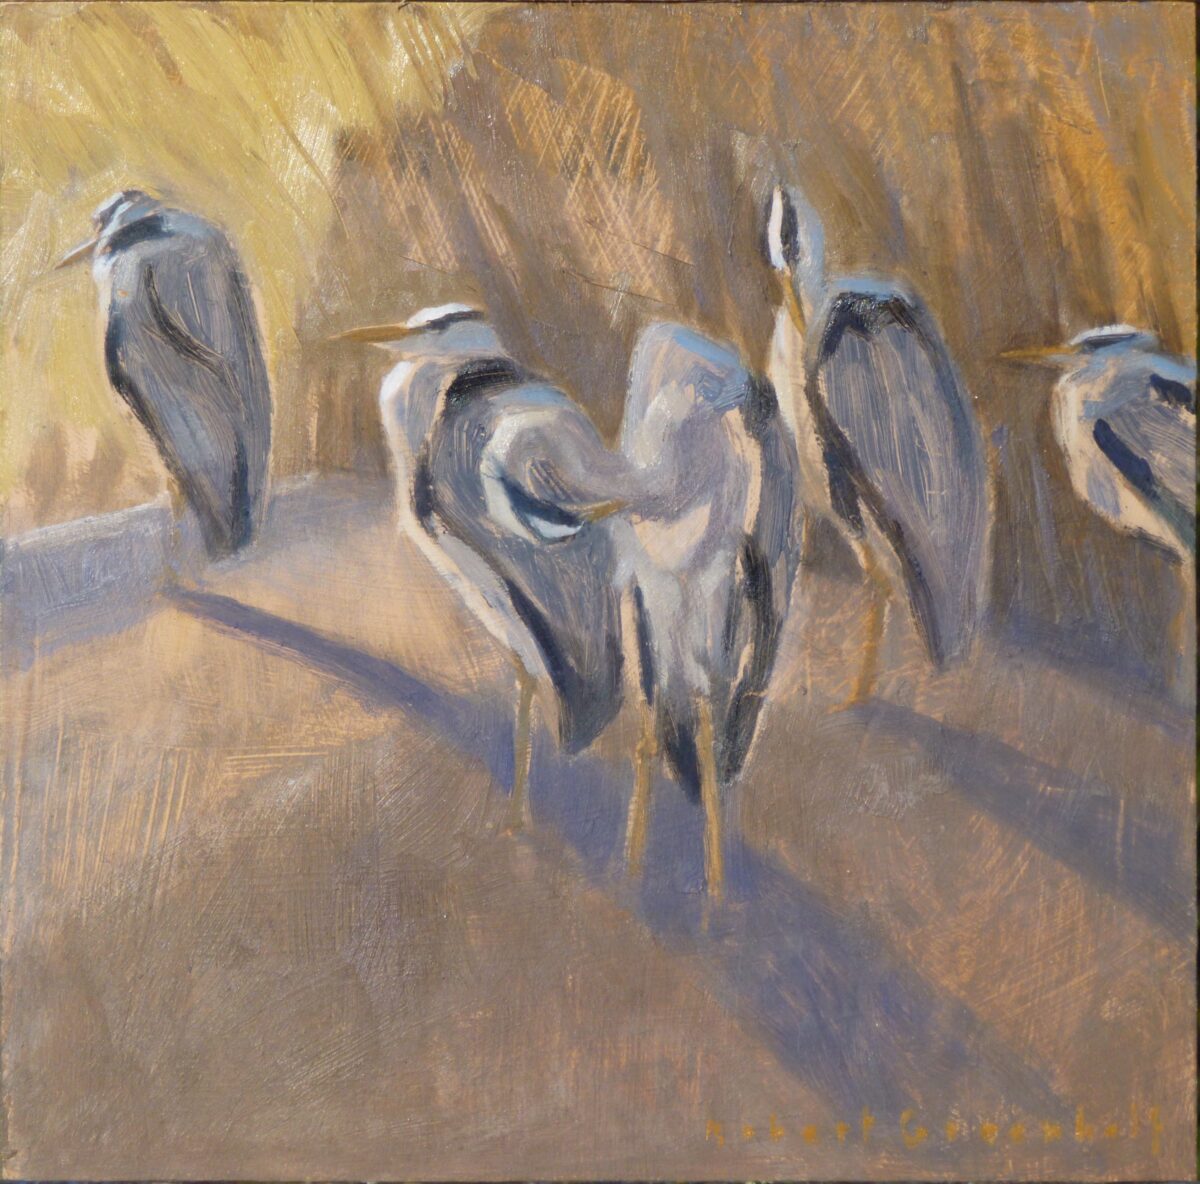 Artwork image titled: Herons Loafing